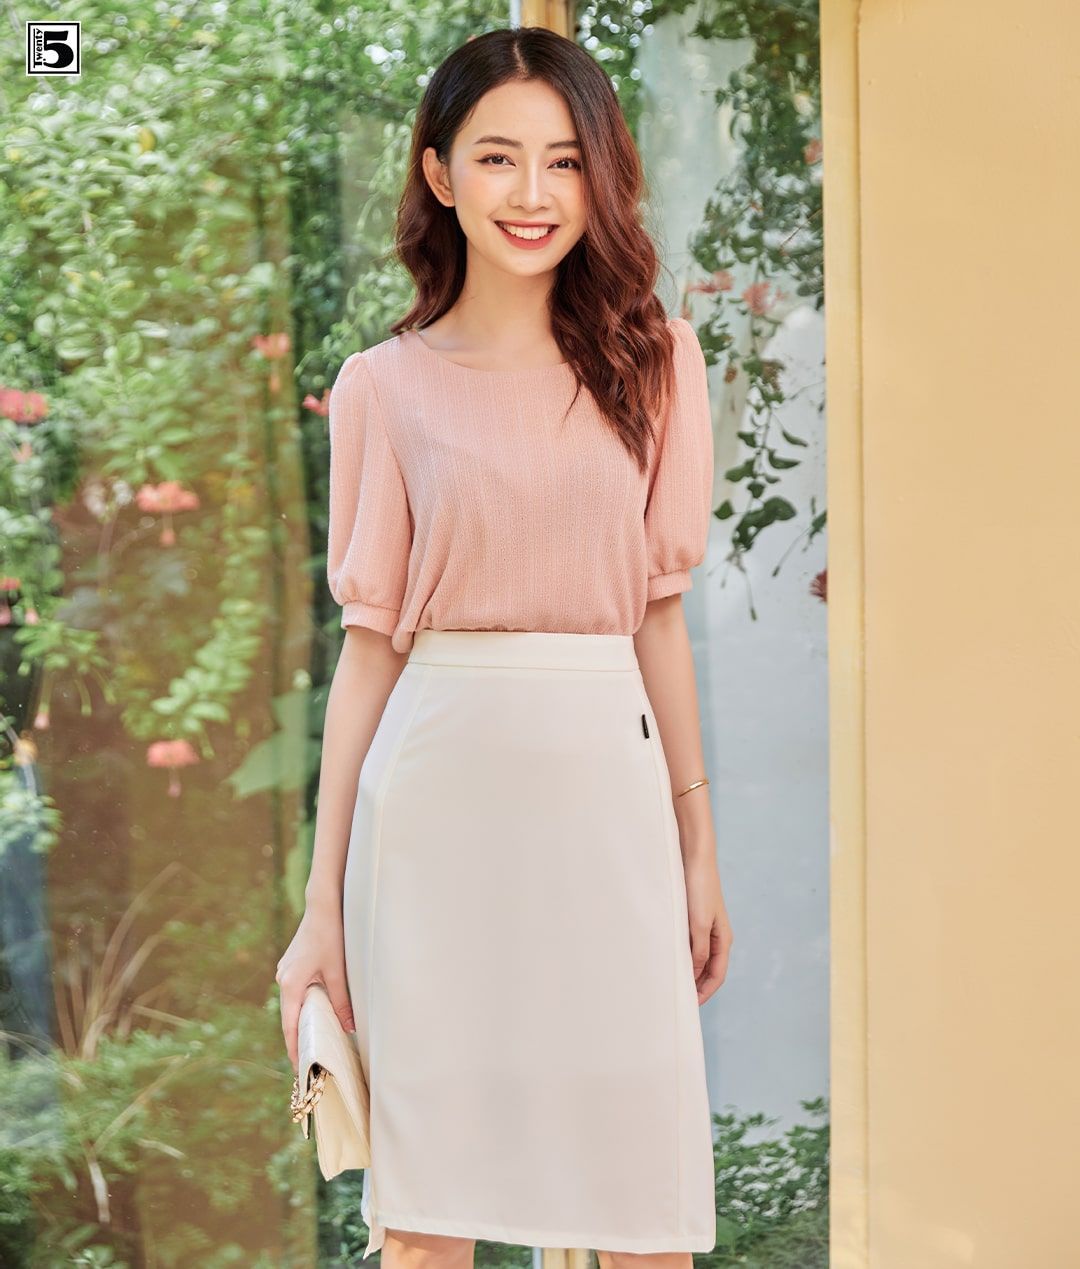 Top 14 Mẫu Chân Váy Đẹp và Bí Quyết Phối Đồ Tinh Tế - Mytour.vn